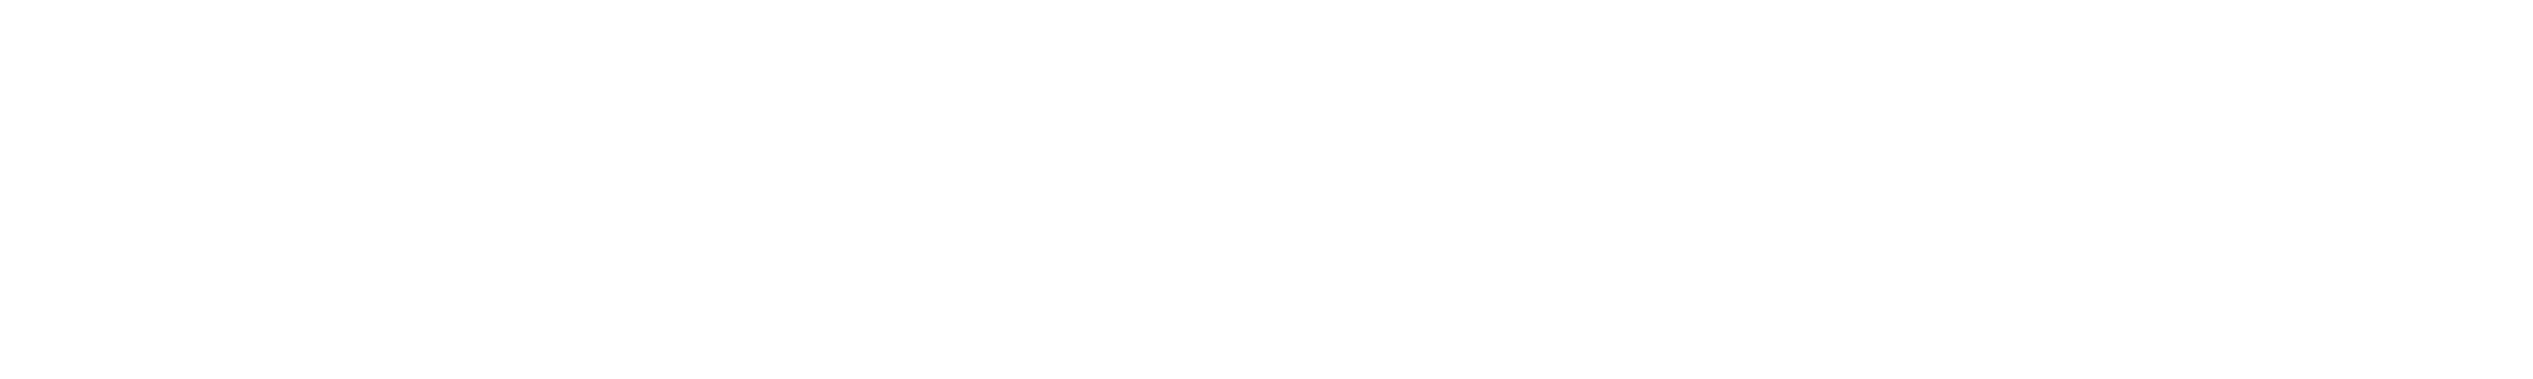 LeakLab